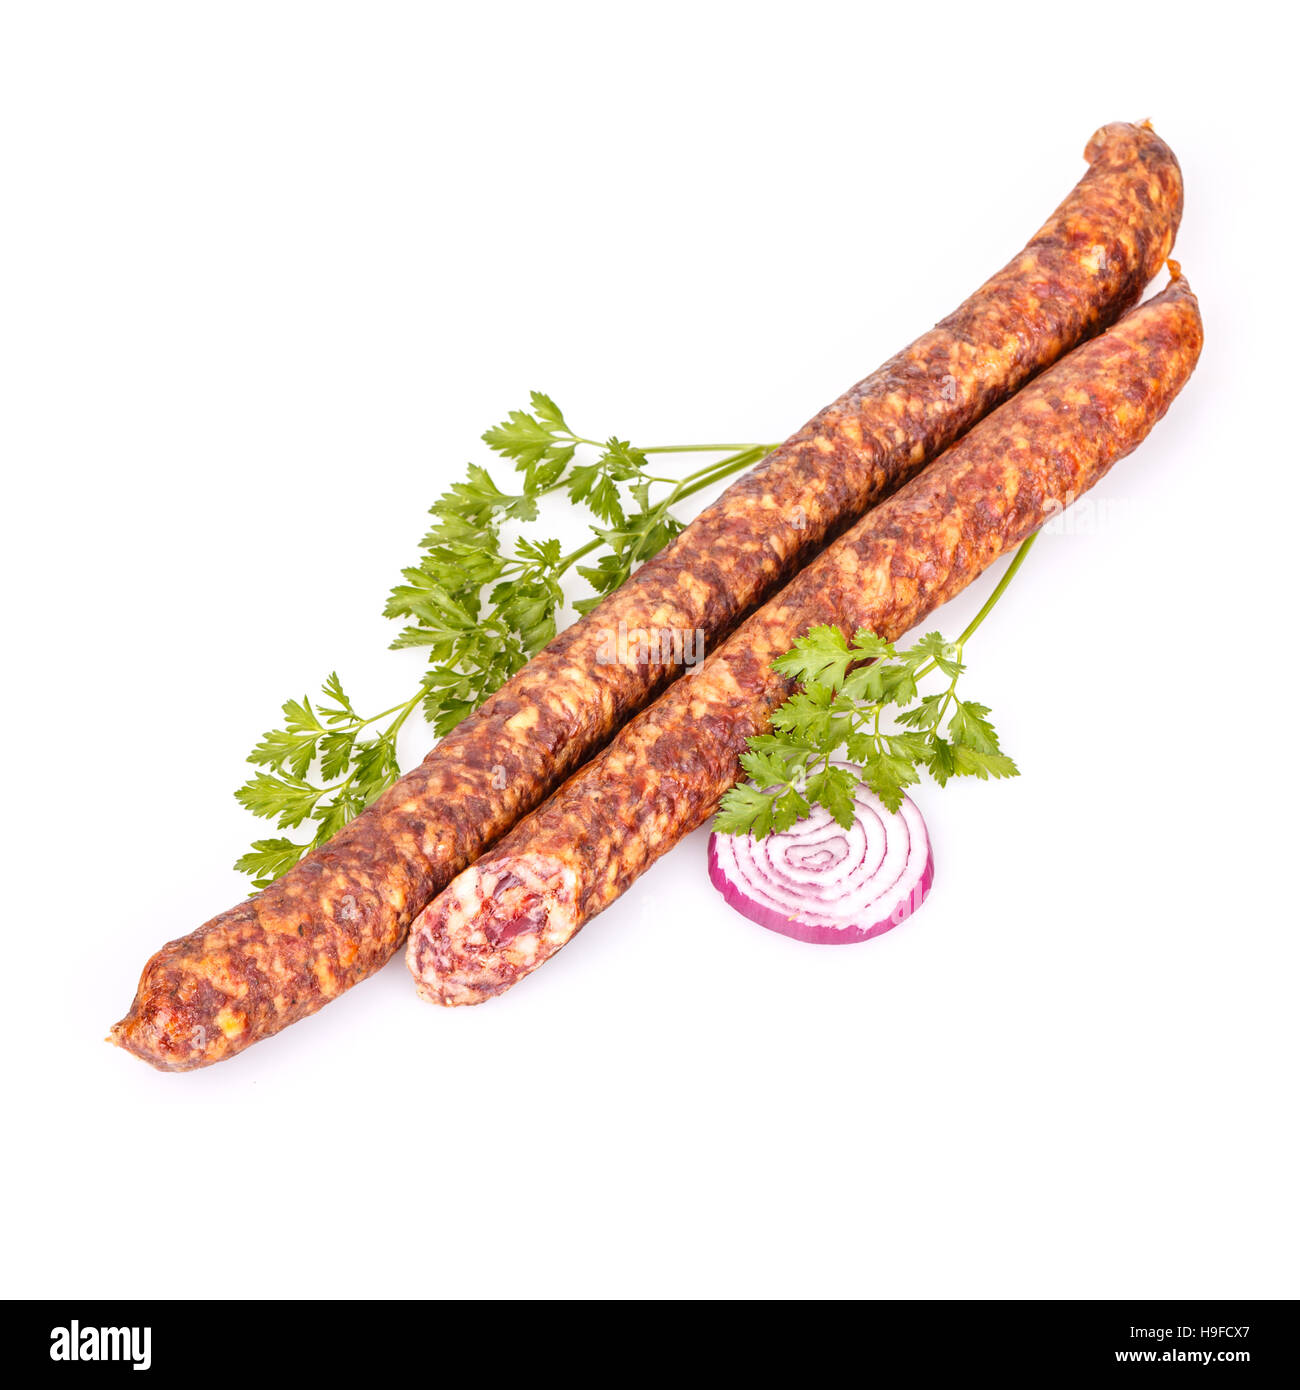 Salami smoked sausage Stock Photo